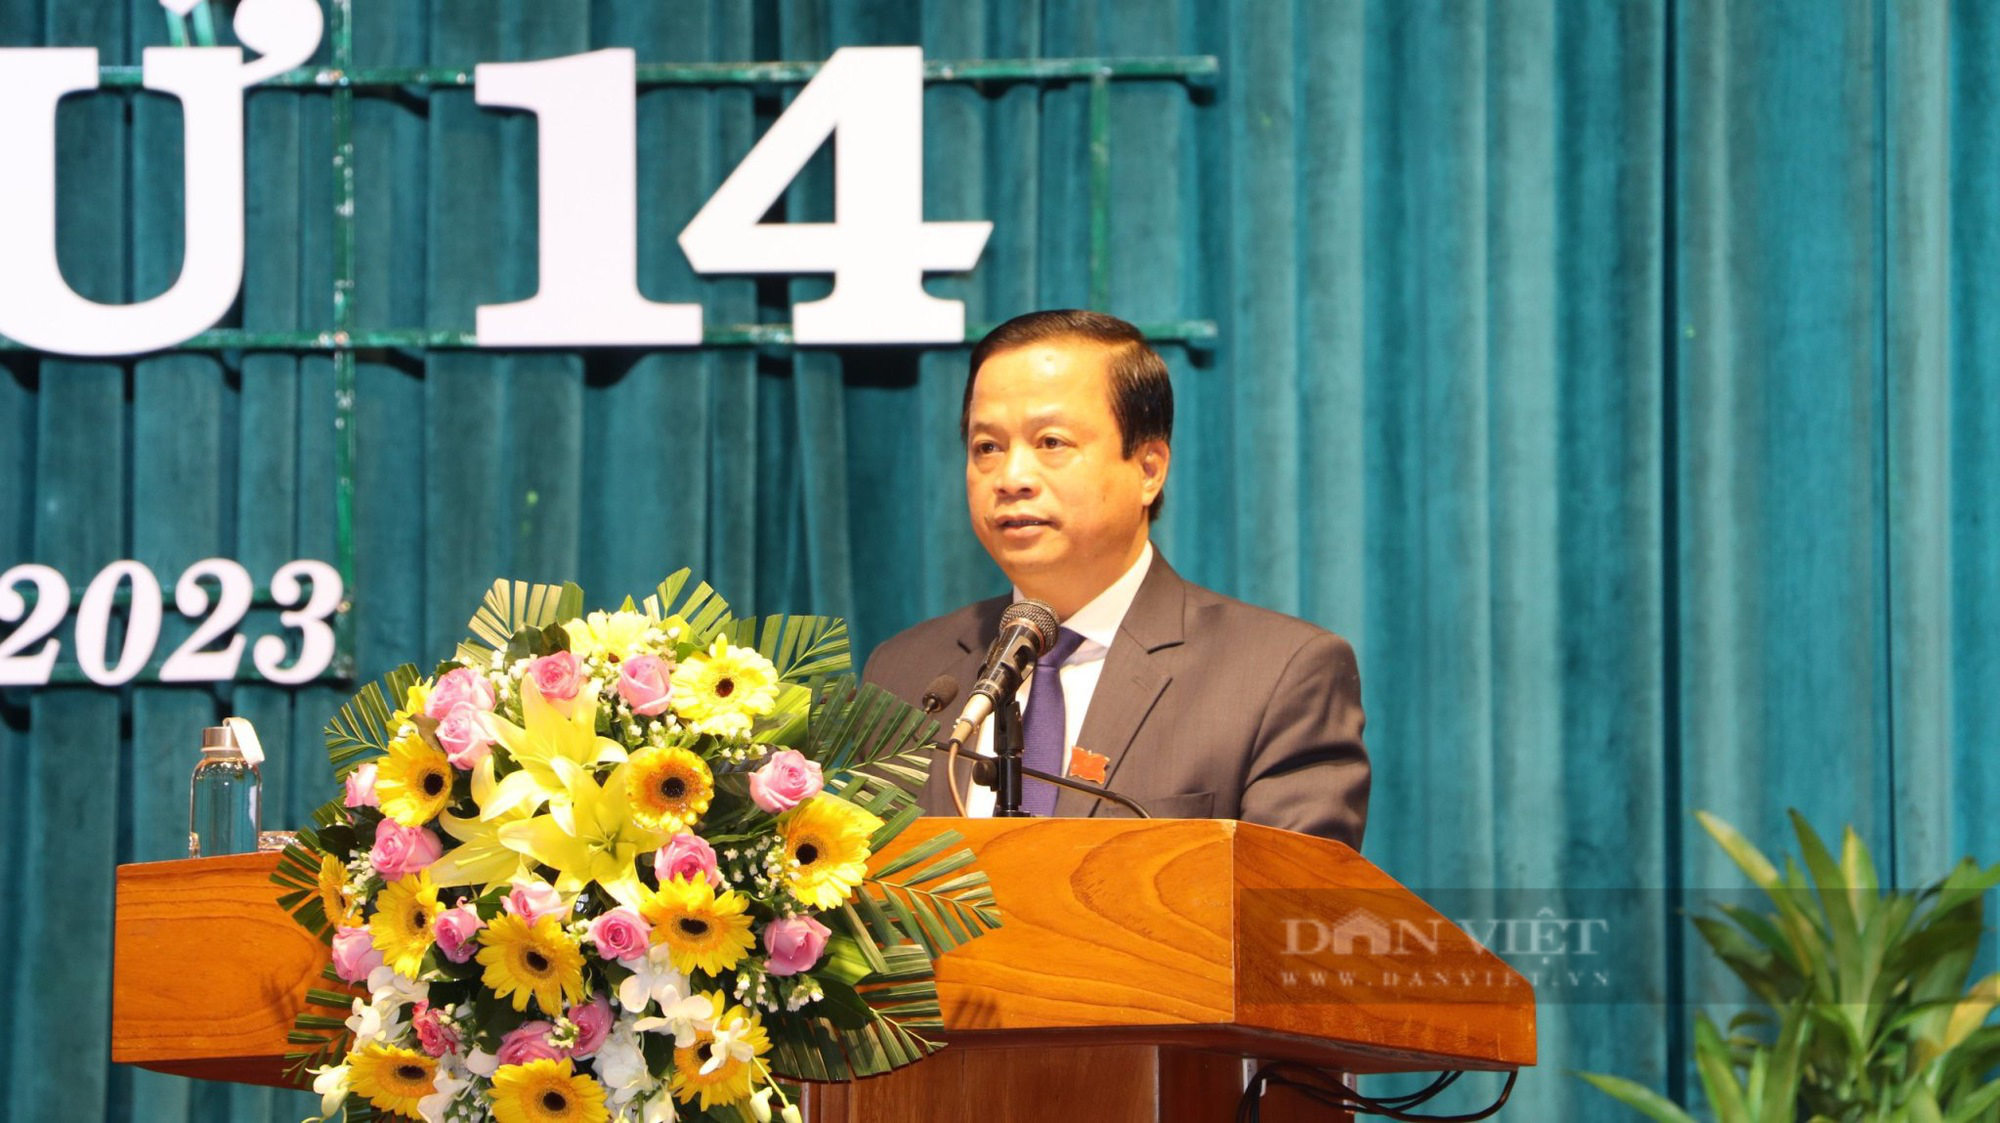 Bí thư Tỉnh ủy Bình Định có phiếu tín nhiệm cao nhiều nhất, tỷ lệ 98,1% - Ảnh 2.